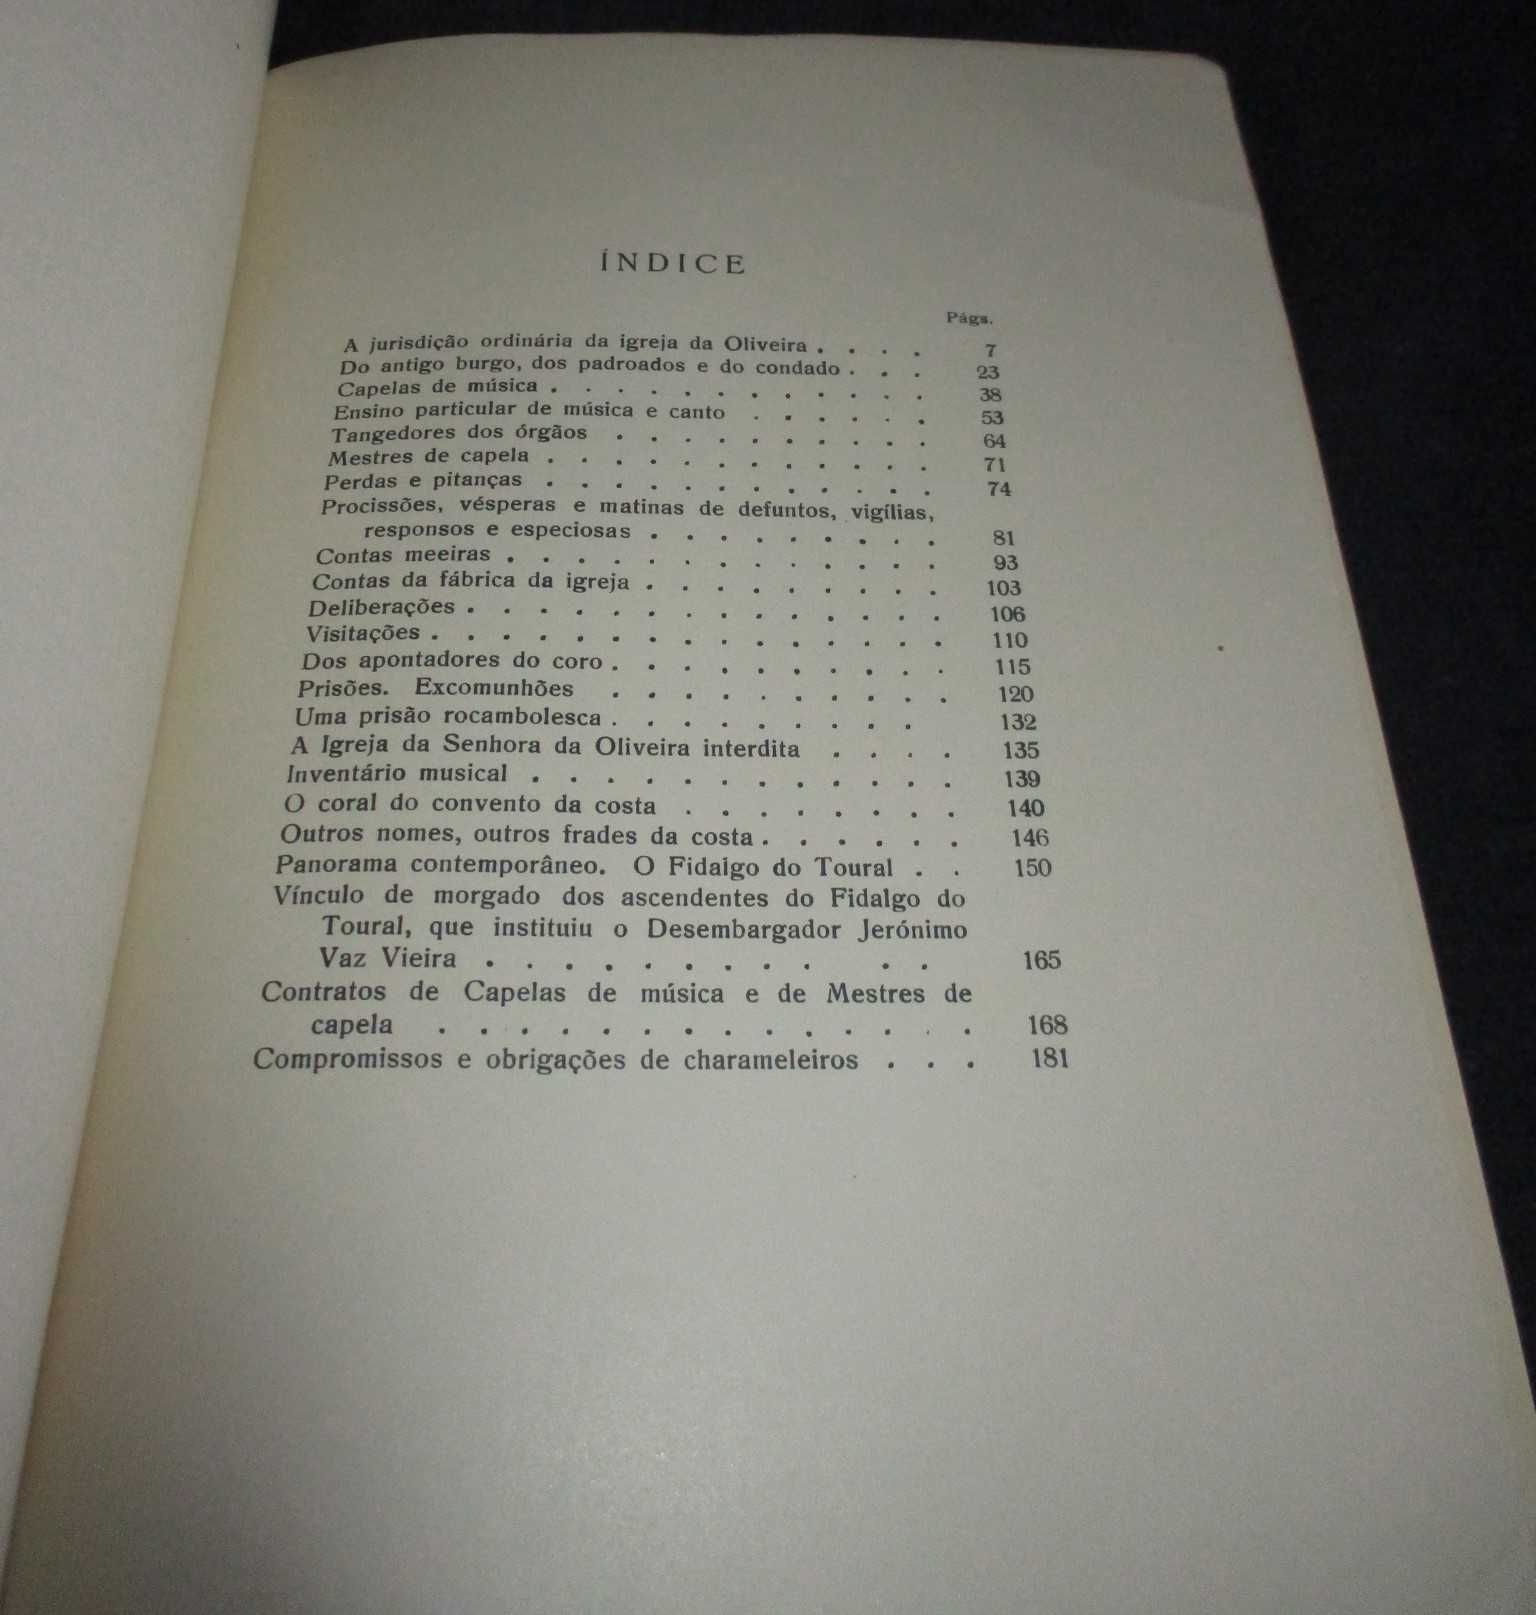 Livros Curiosidades de Guimarães Alberto Vieira Braga Autografados